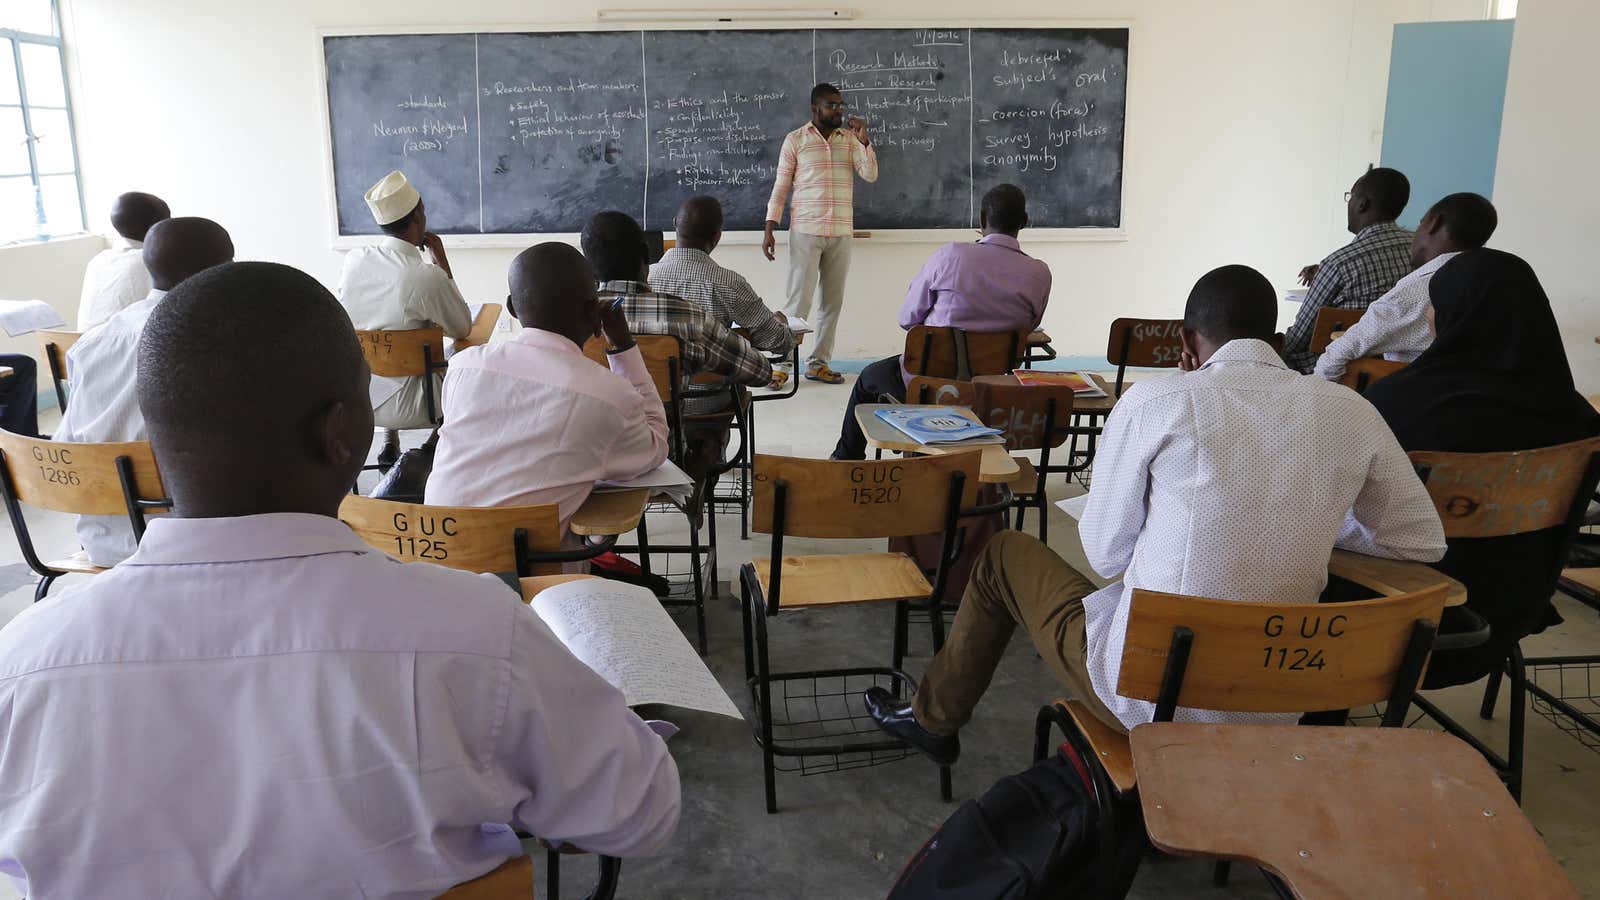 Students in Kenya